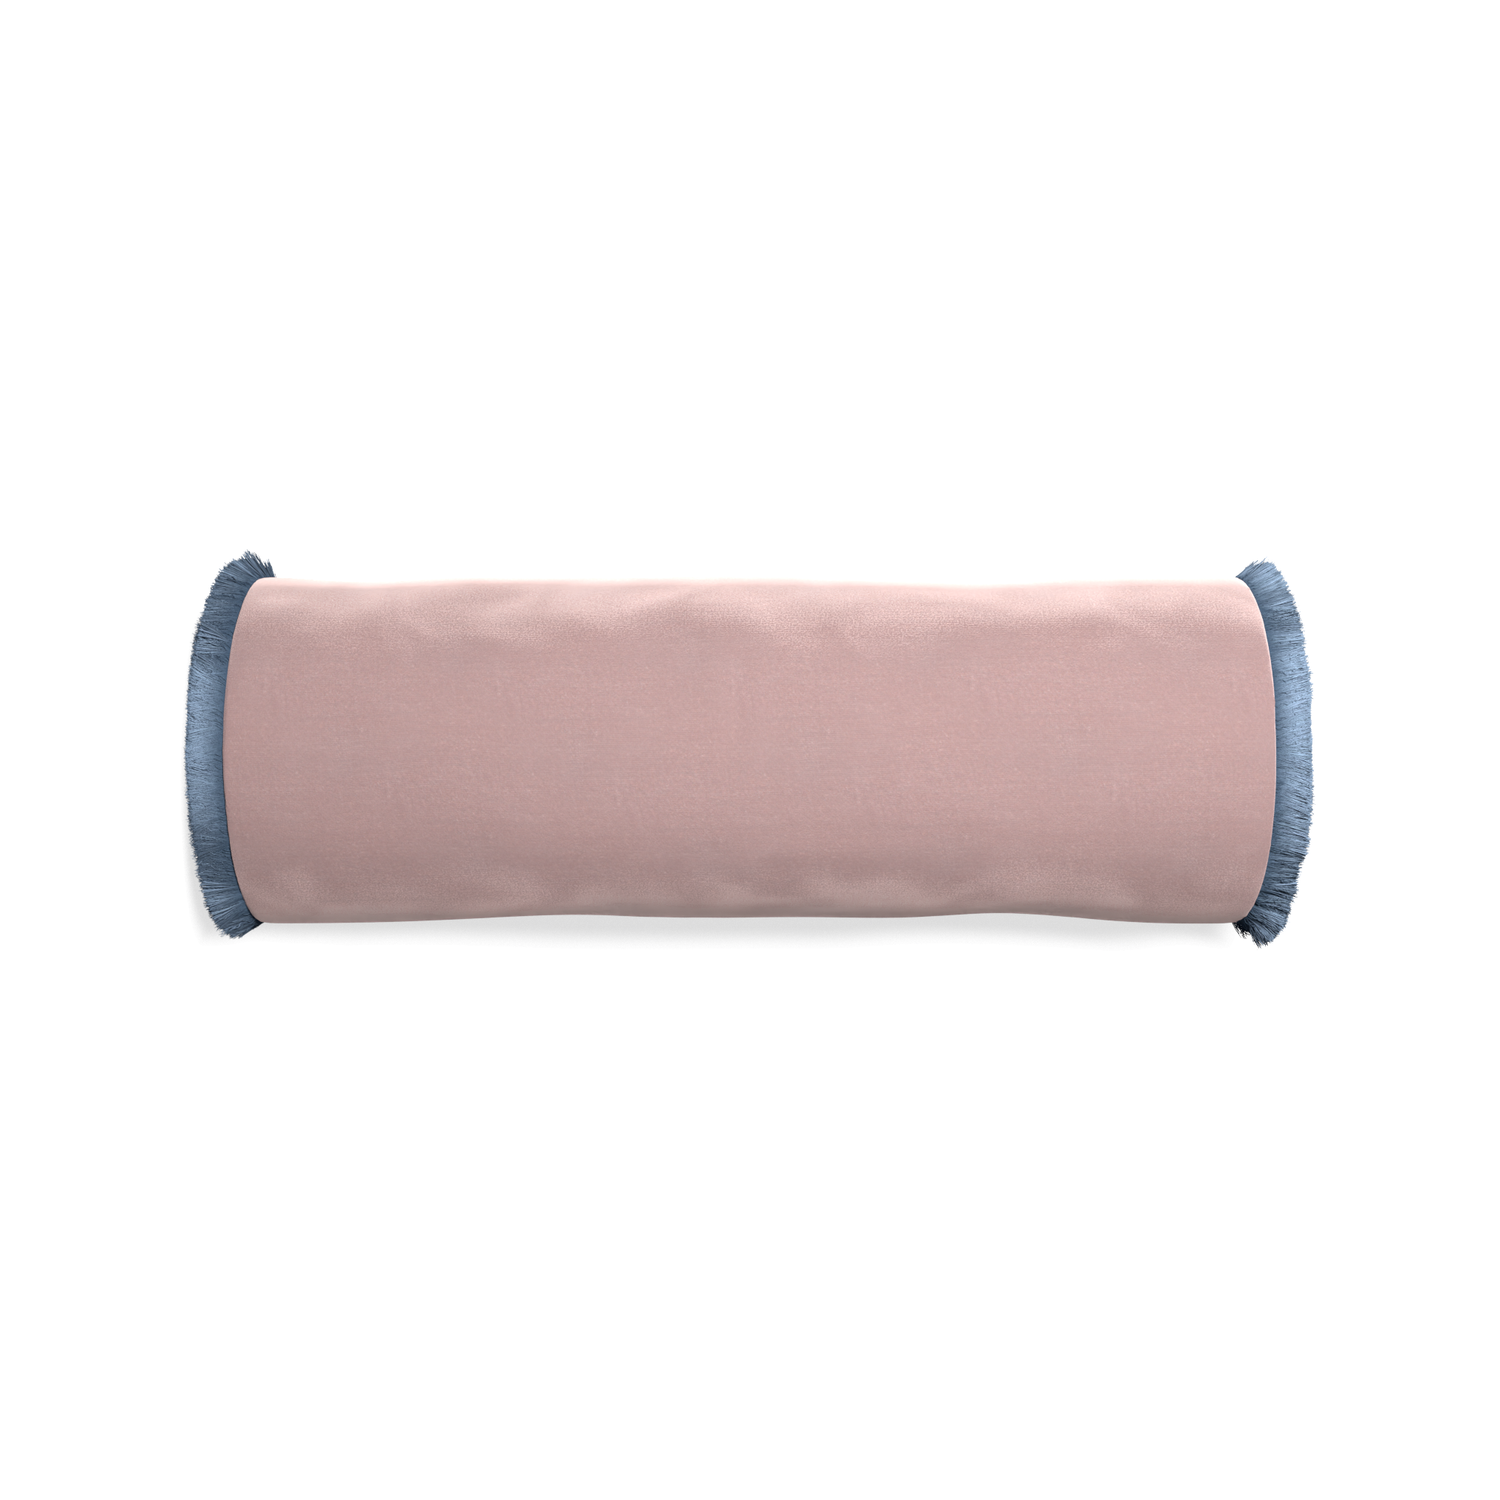 Bolster mauve velvet custom pillow with sky fringe on white background